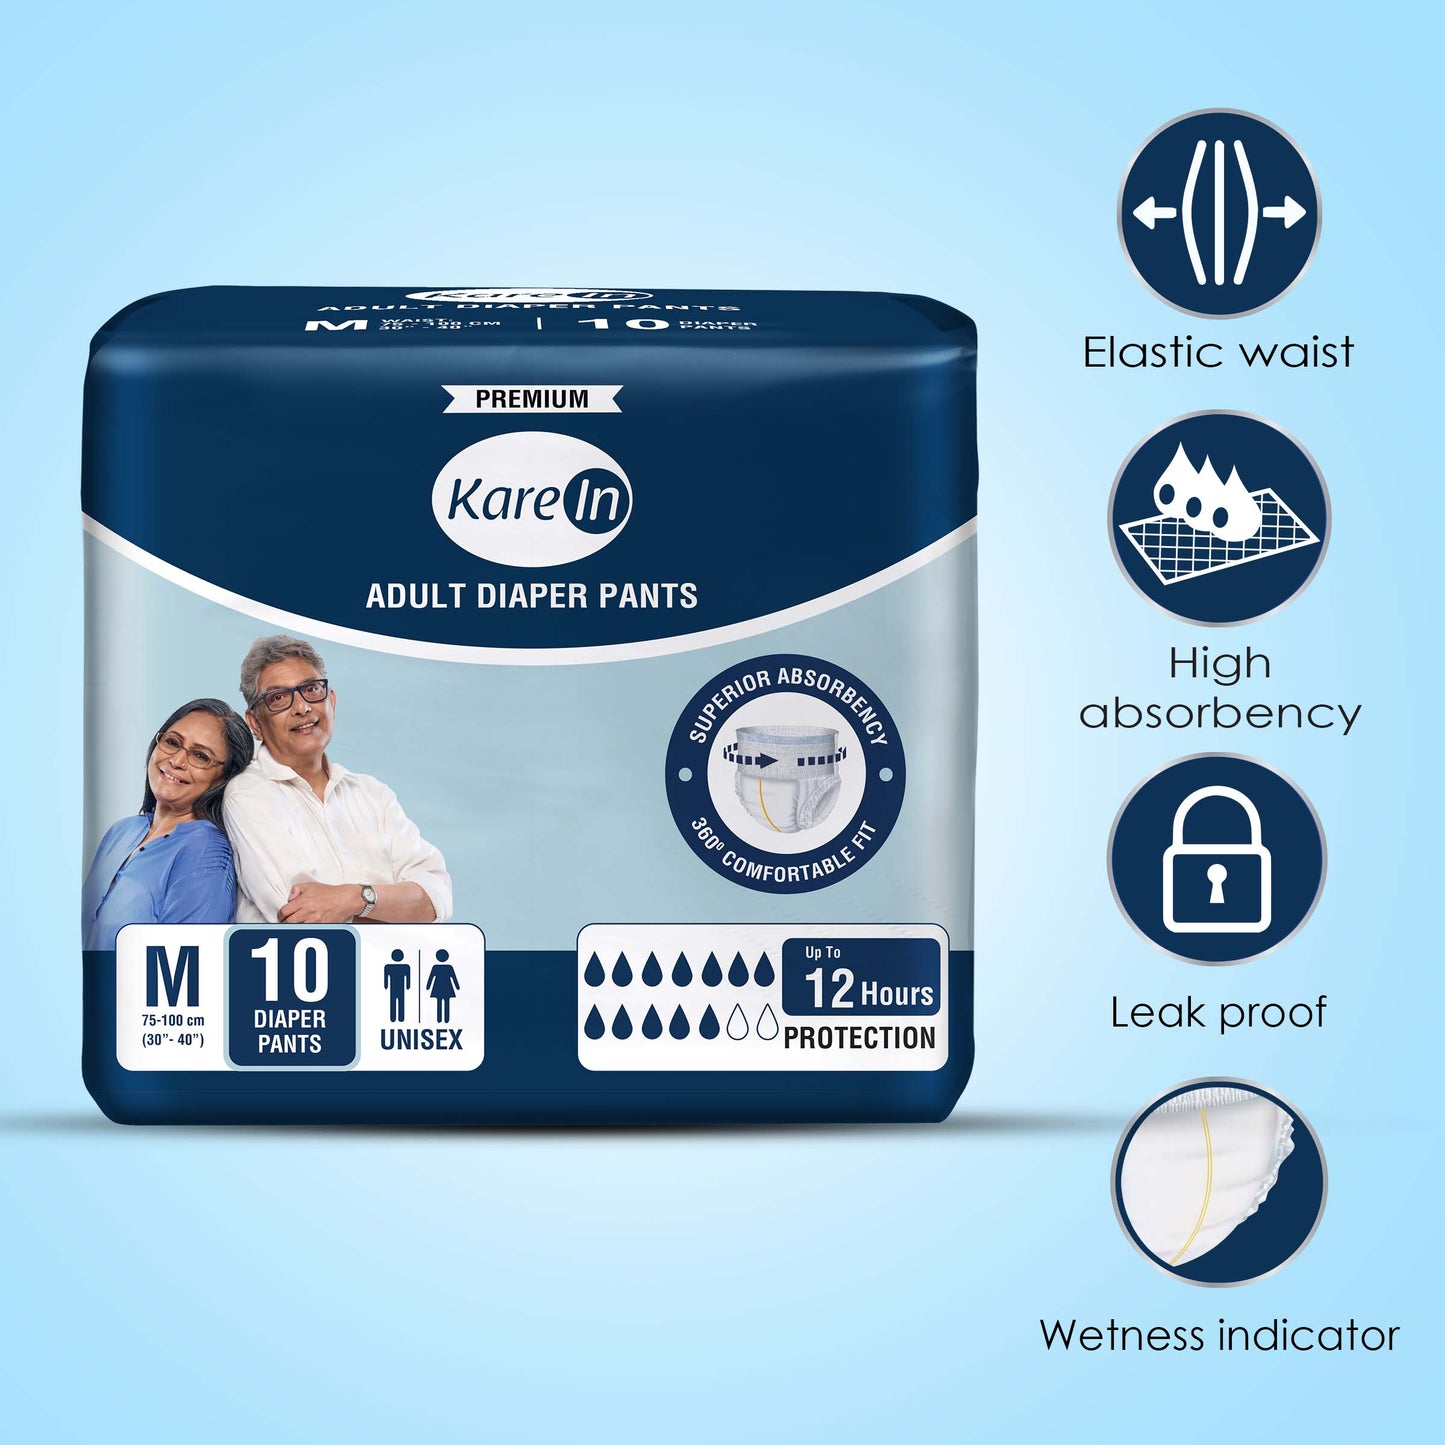 KareIn Premium Adult Diaper Pants, Medium 75 - 100 Cm (30"- 40"), Unisex, Leakproof, Elastic Waist, Wetness, Indicator, 10 Count